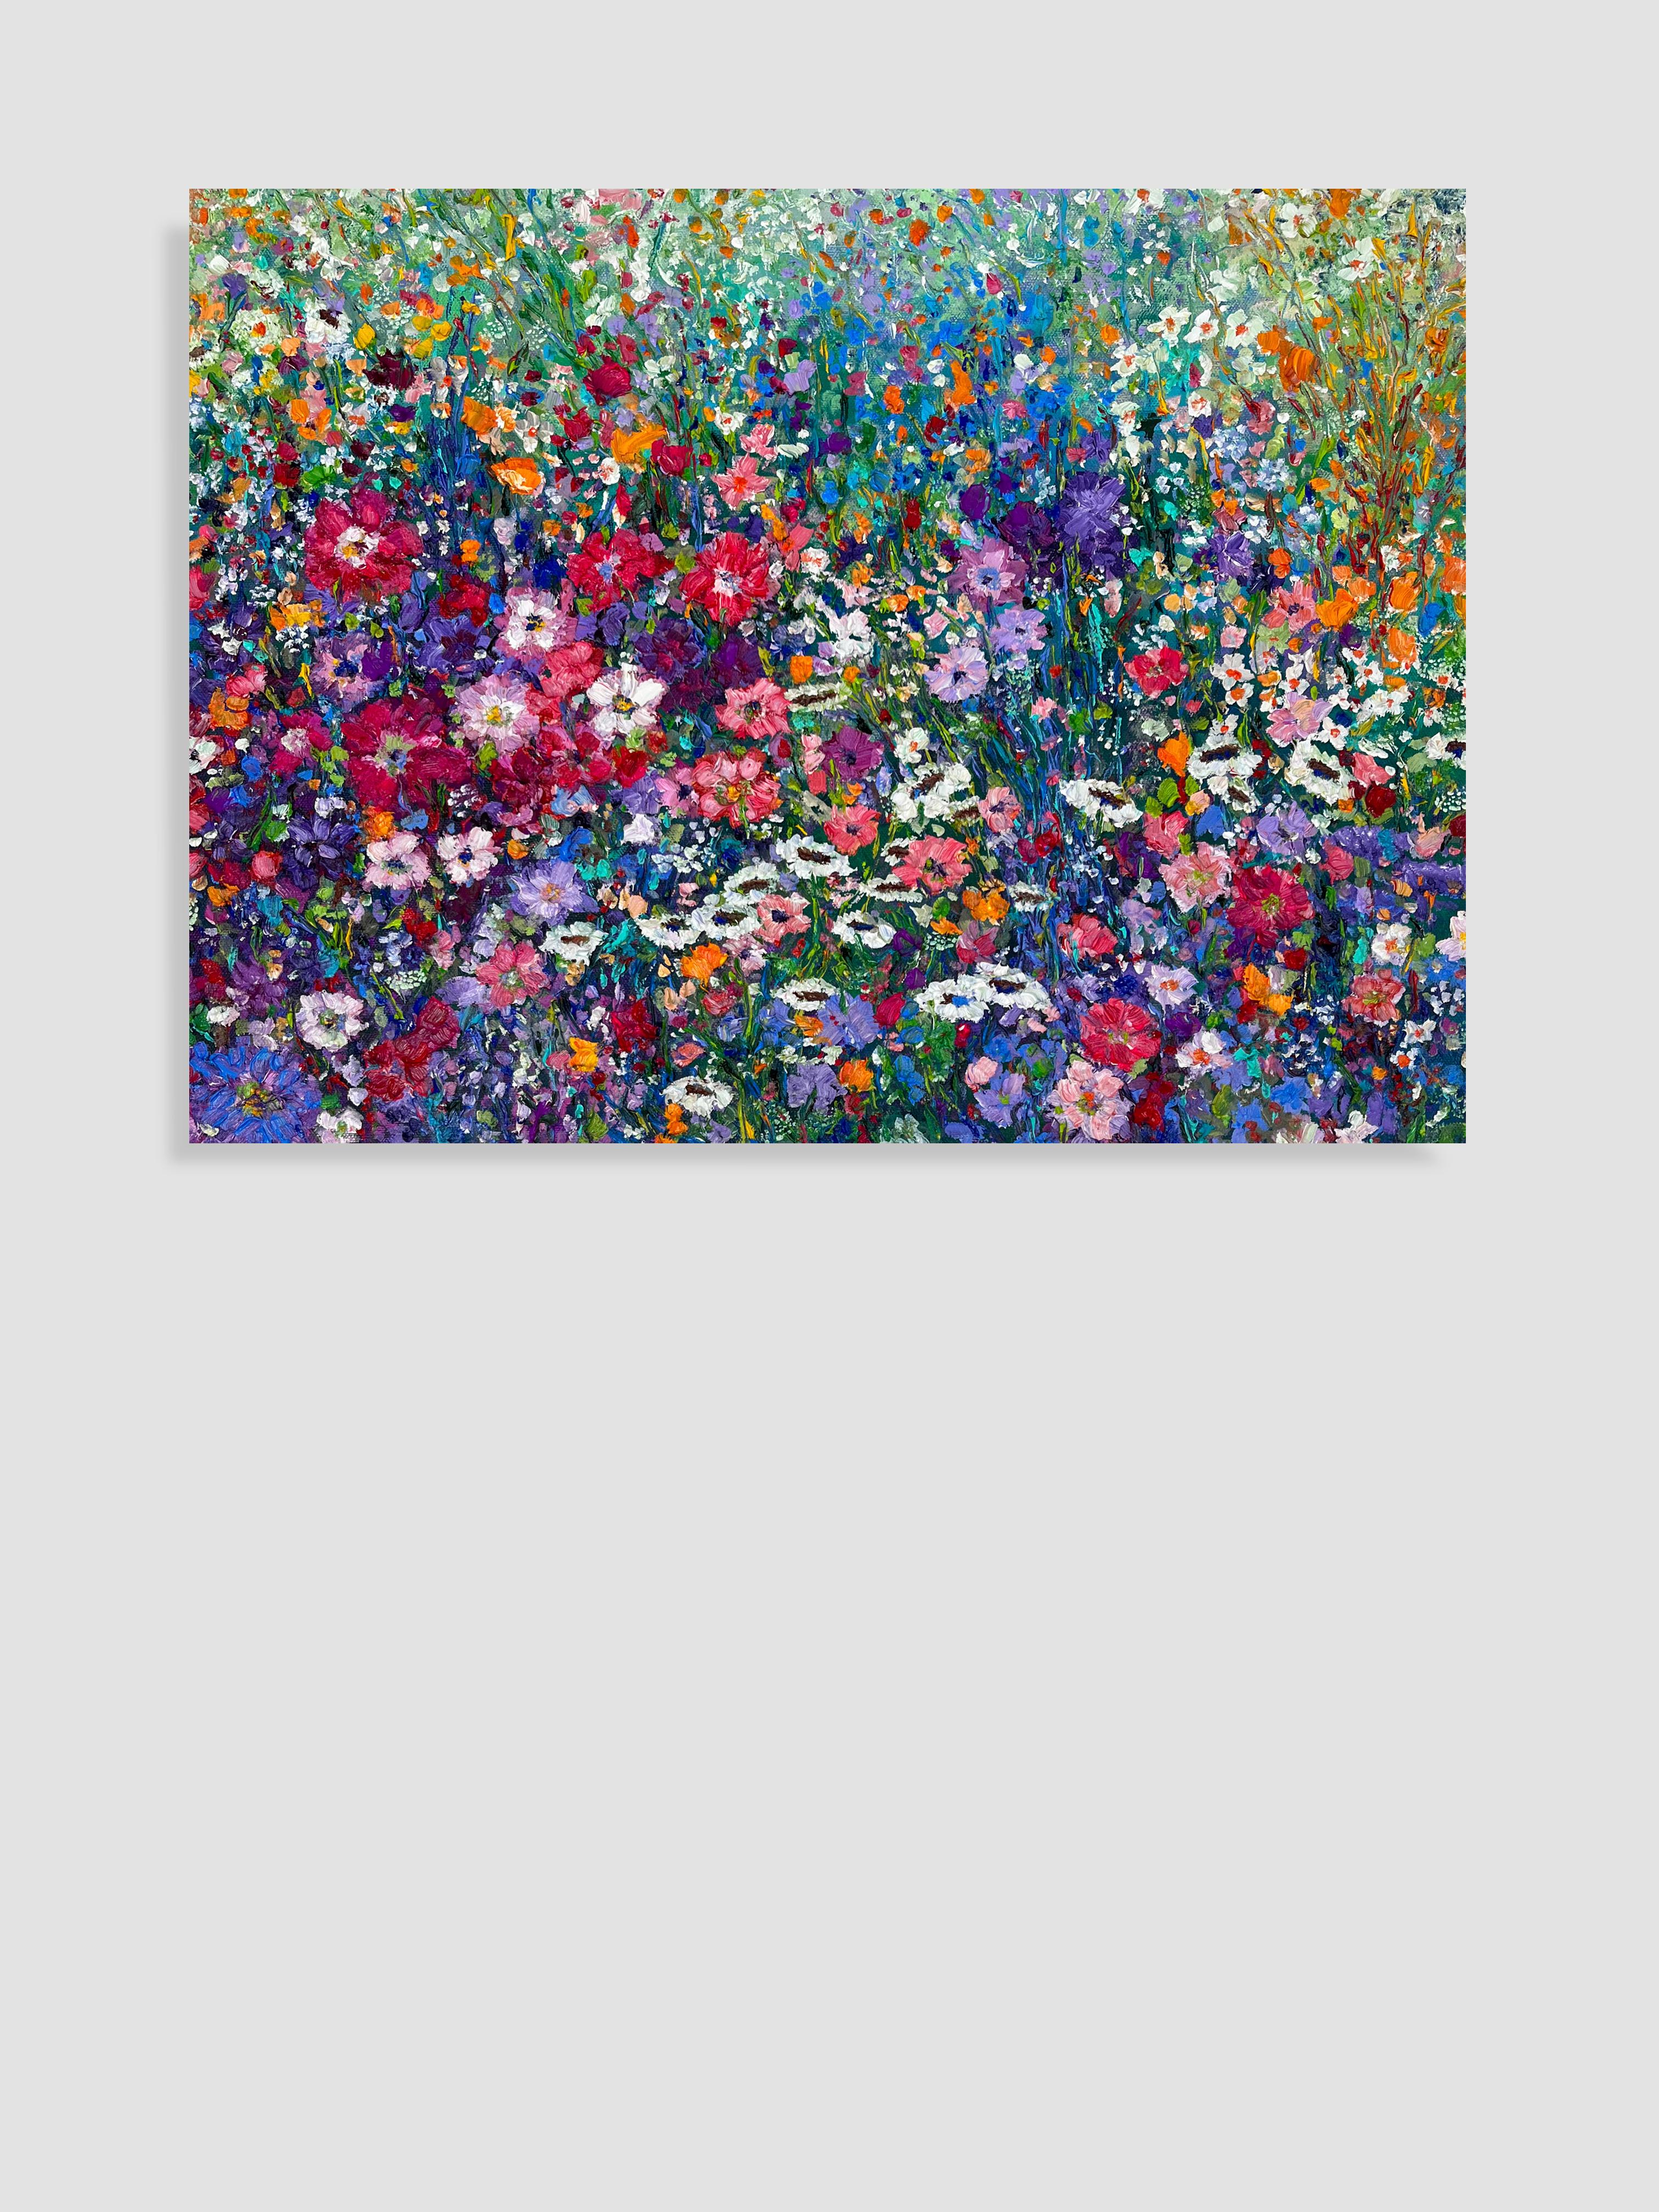 <p>Kommentare des KünstlersIm Frühling beginnt eine Blumenparade mit rosafarbenen, violetten und weißen Wildblumen, die auf dem Feld blühen und sich im Wind verheddern.<br> Die im impressionistischen Stil gemalten Bilder fangen mit ihrer